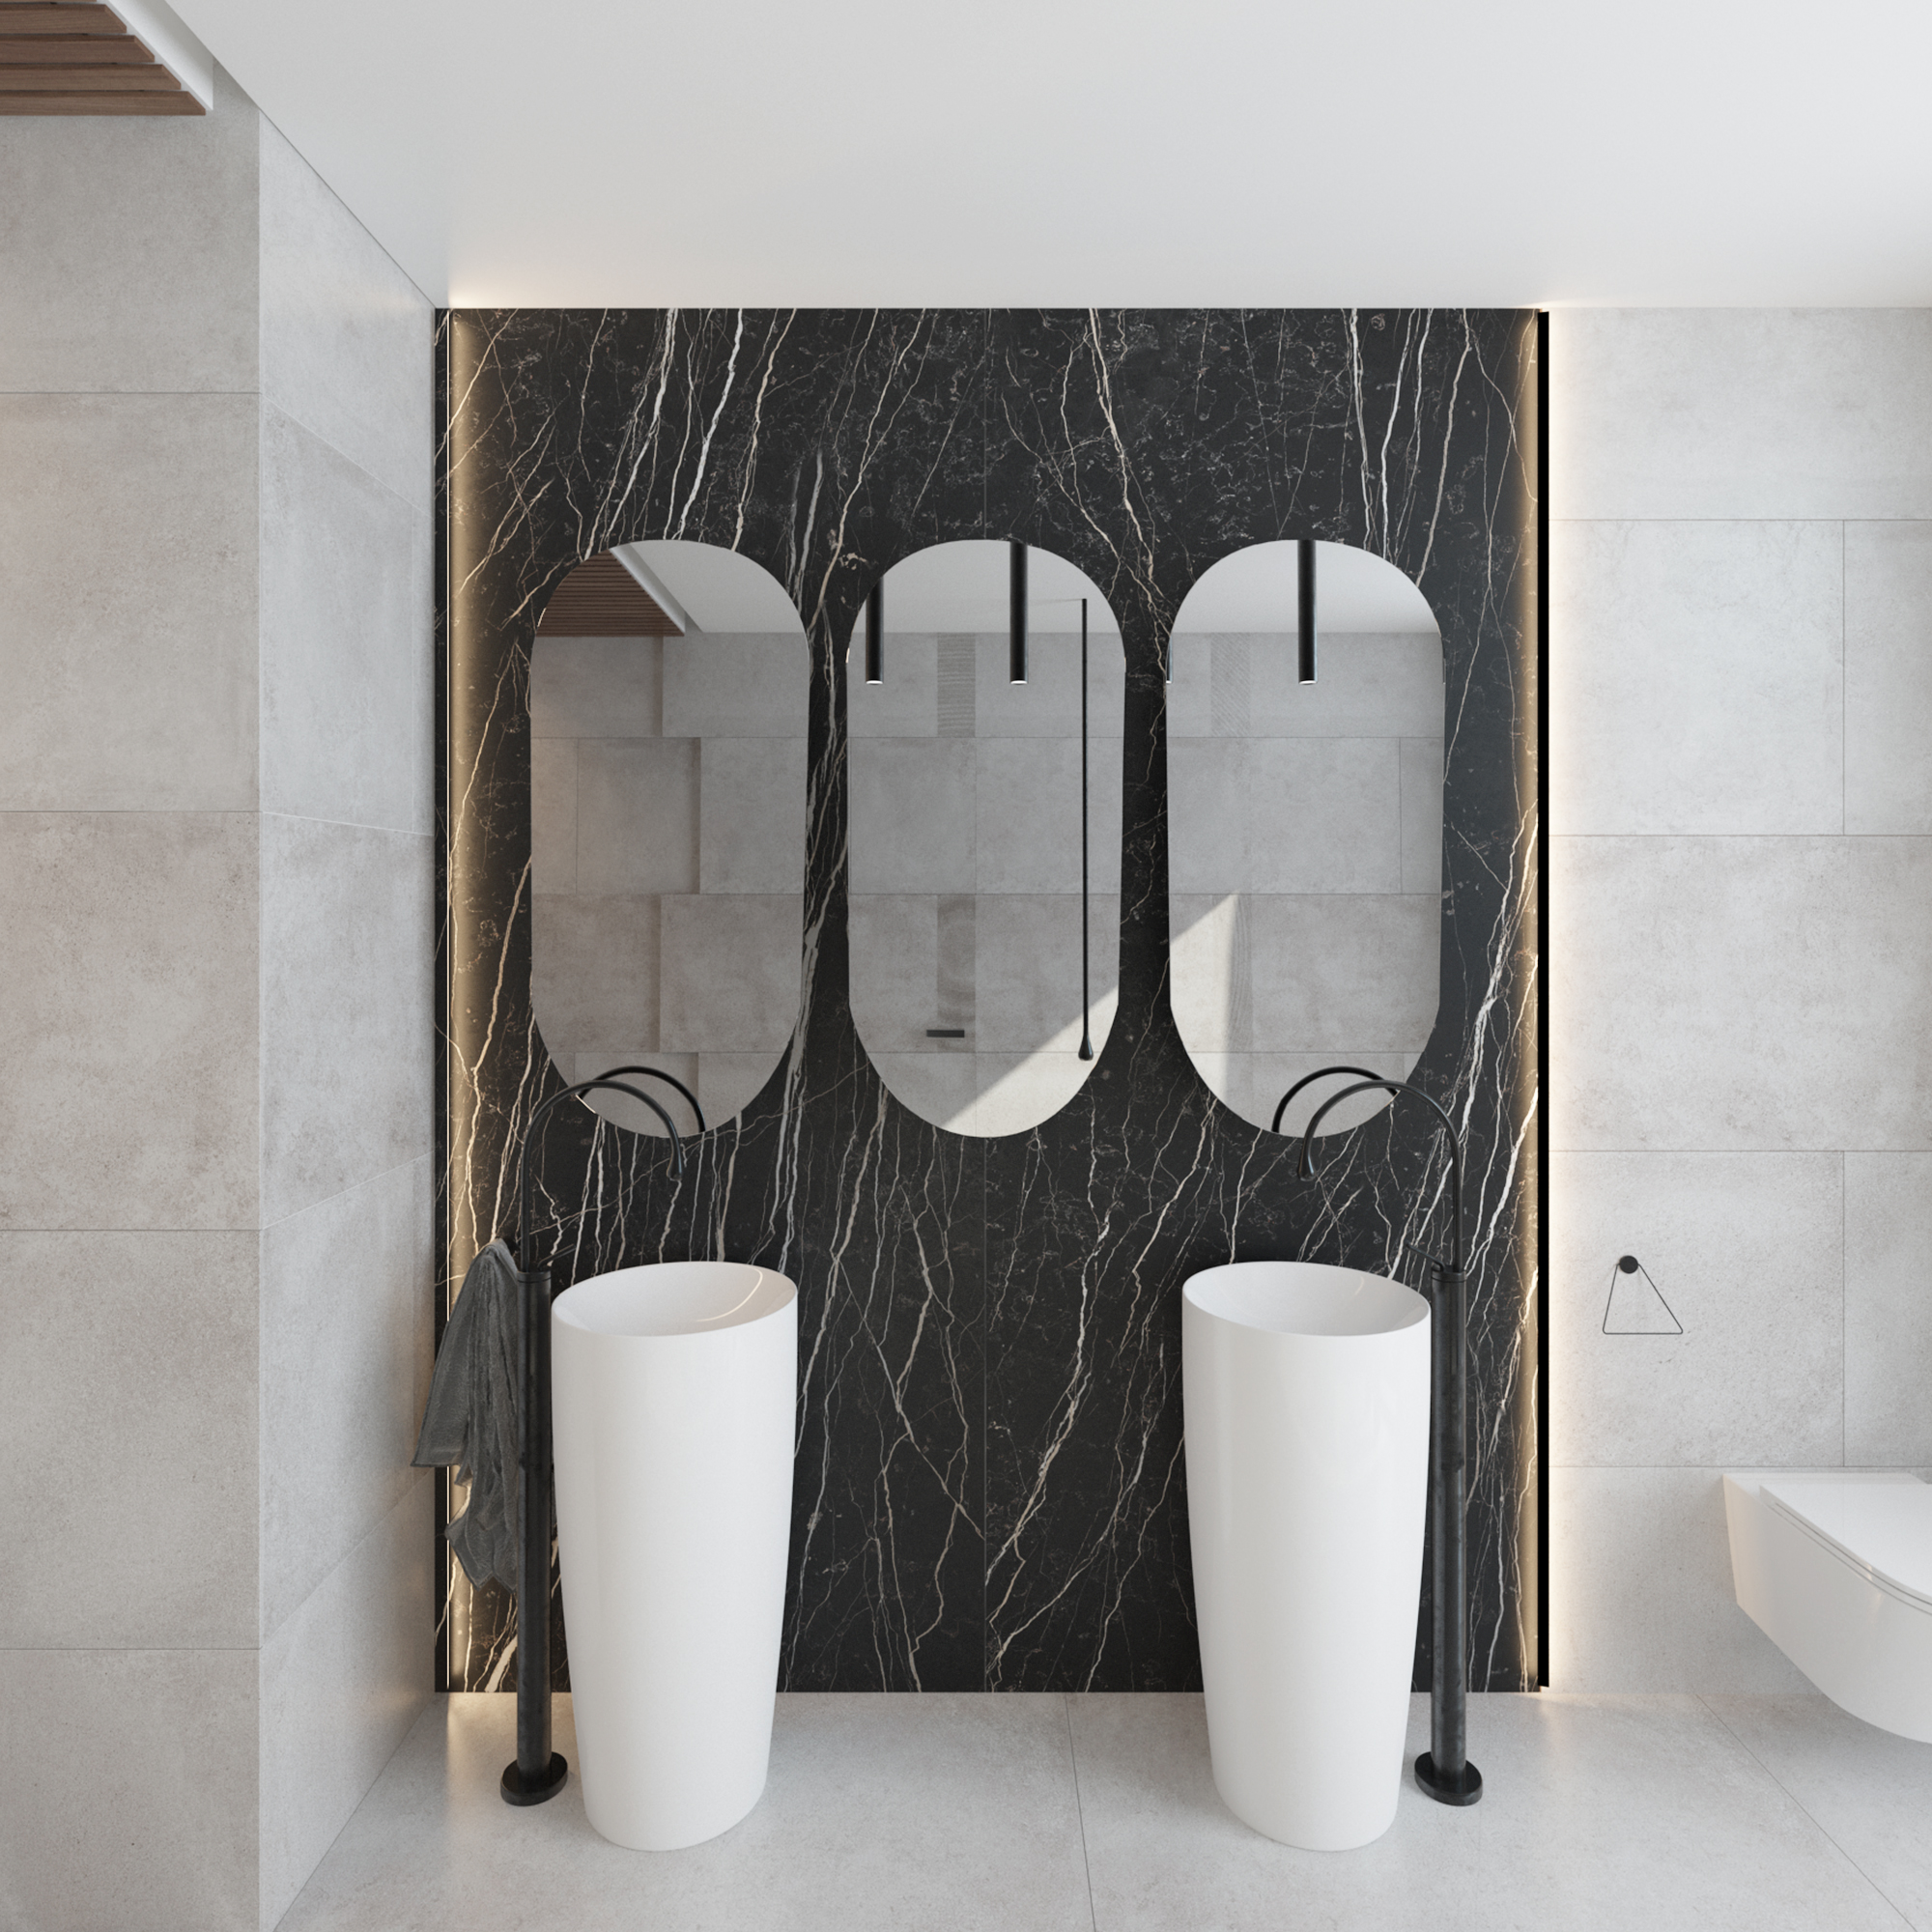 TRINIDÀD - Specchi Ovali Eleganti per salotto e bagno